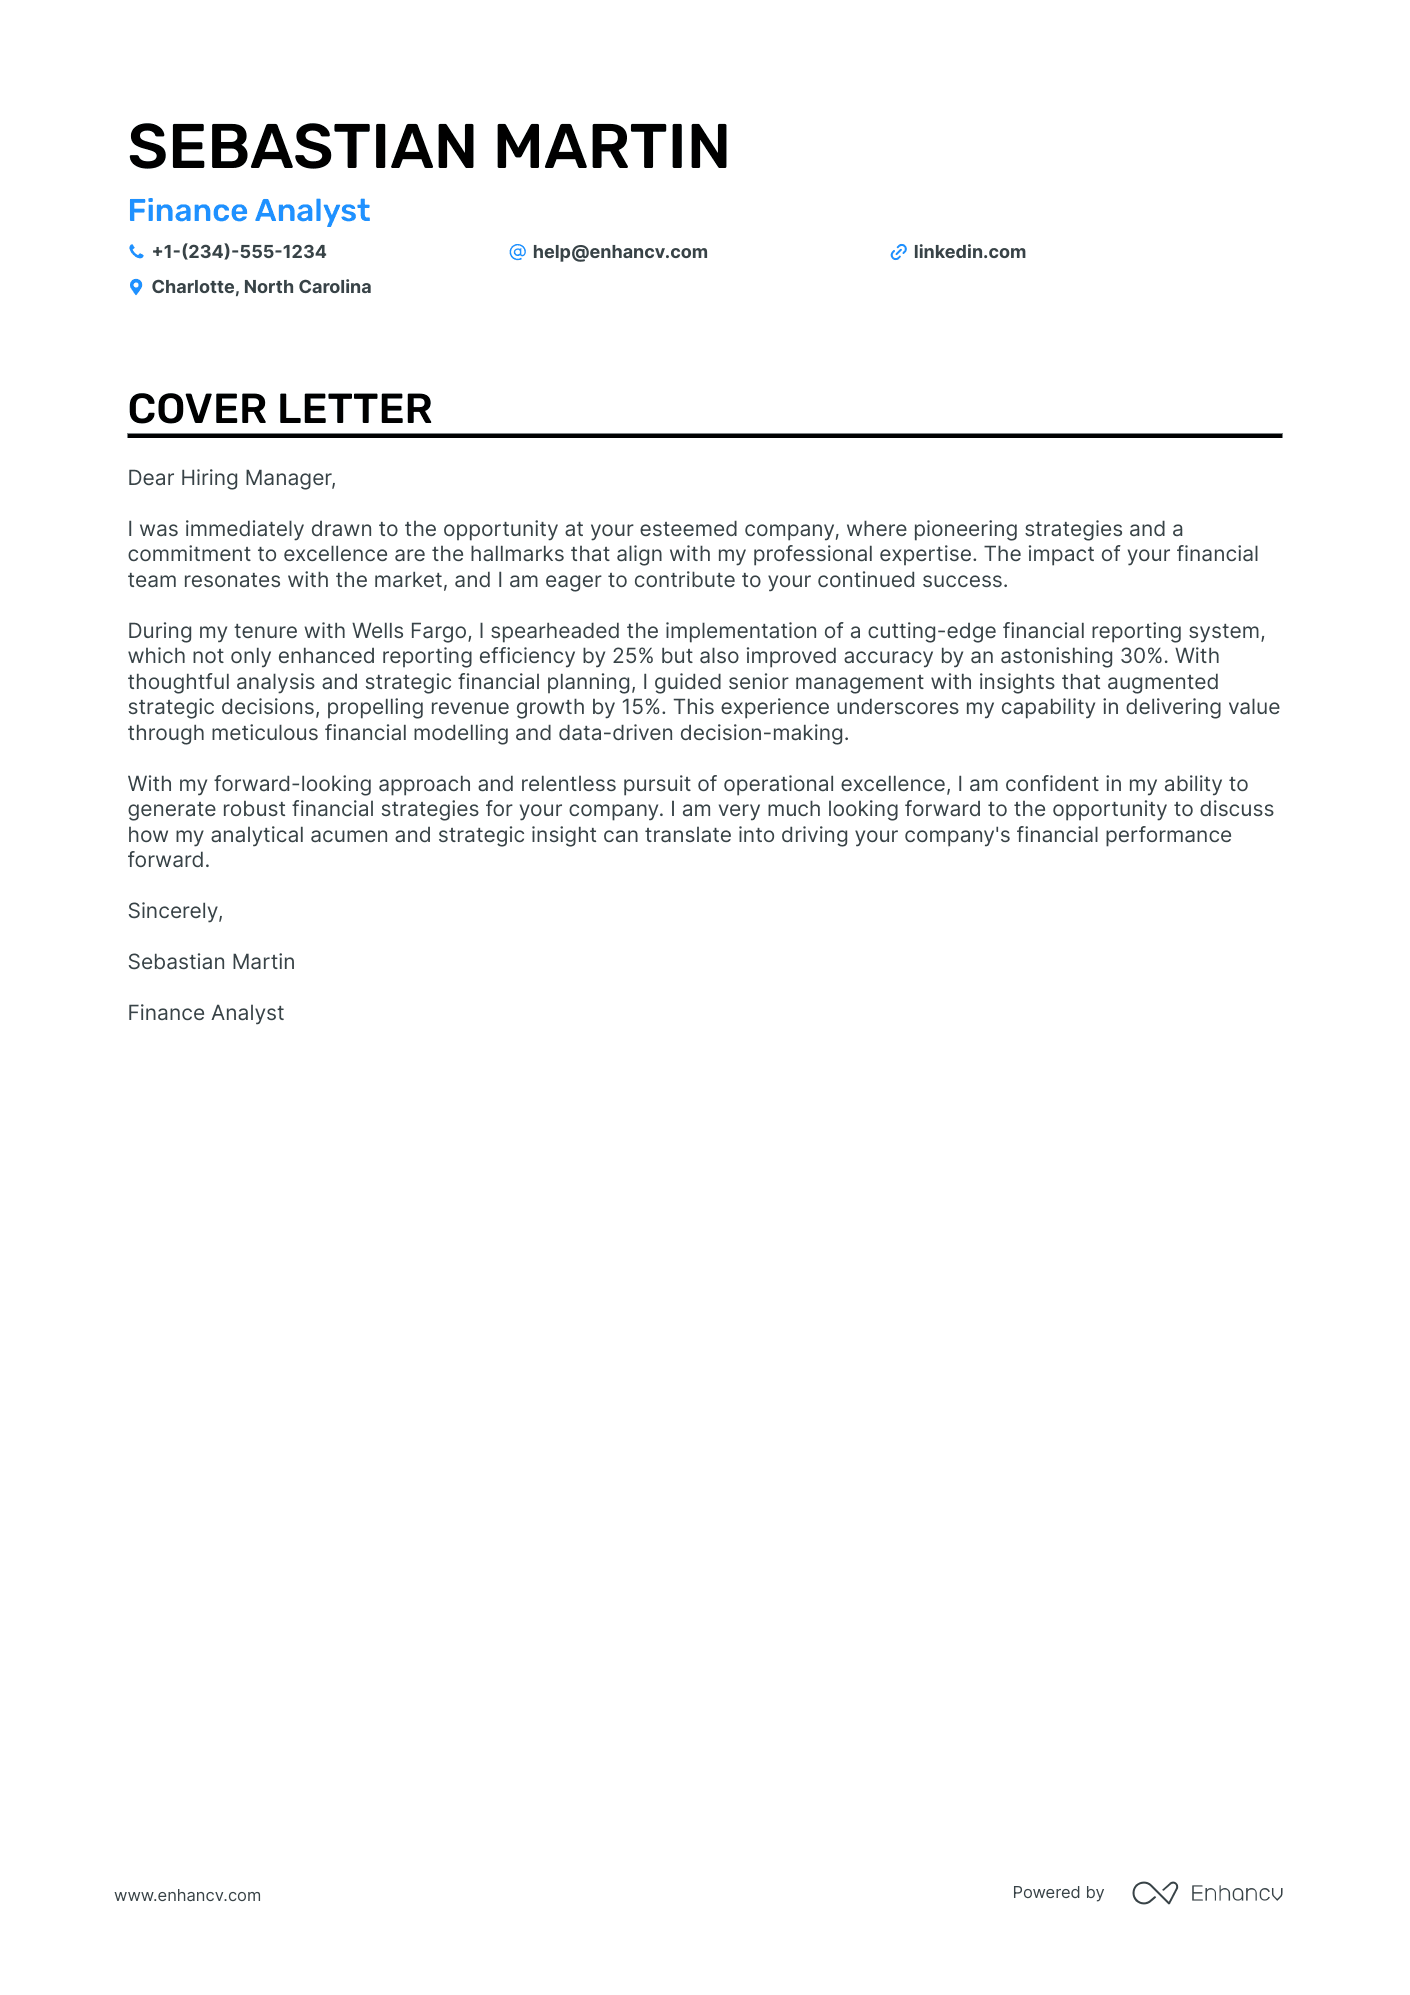 Finance cover letter